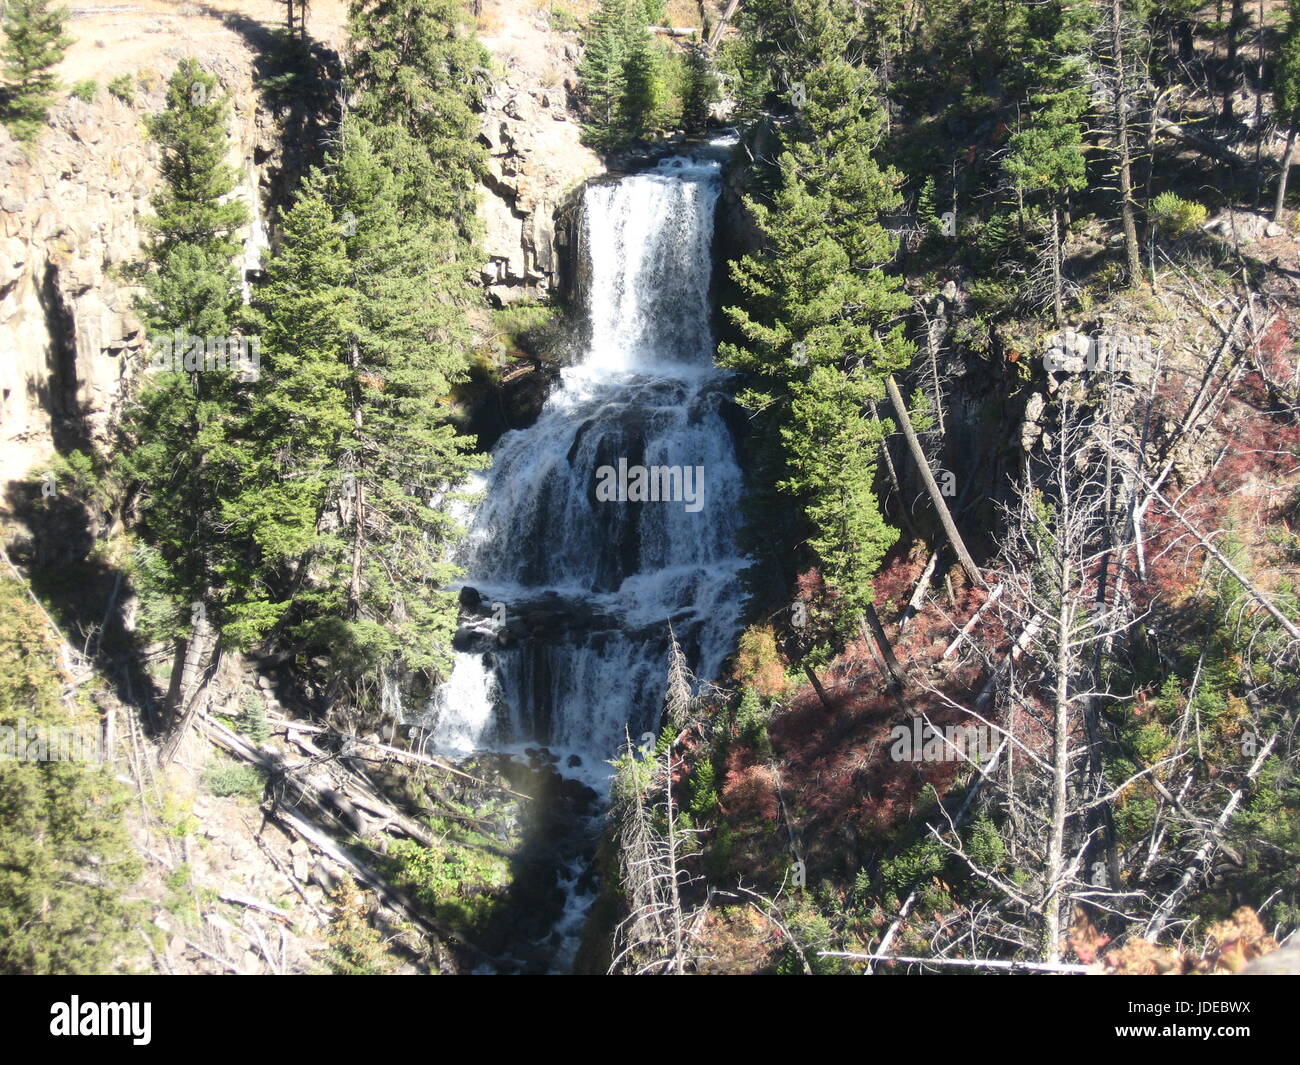 Amazing Yellowstone waterfall Stock Photo